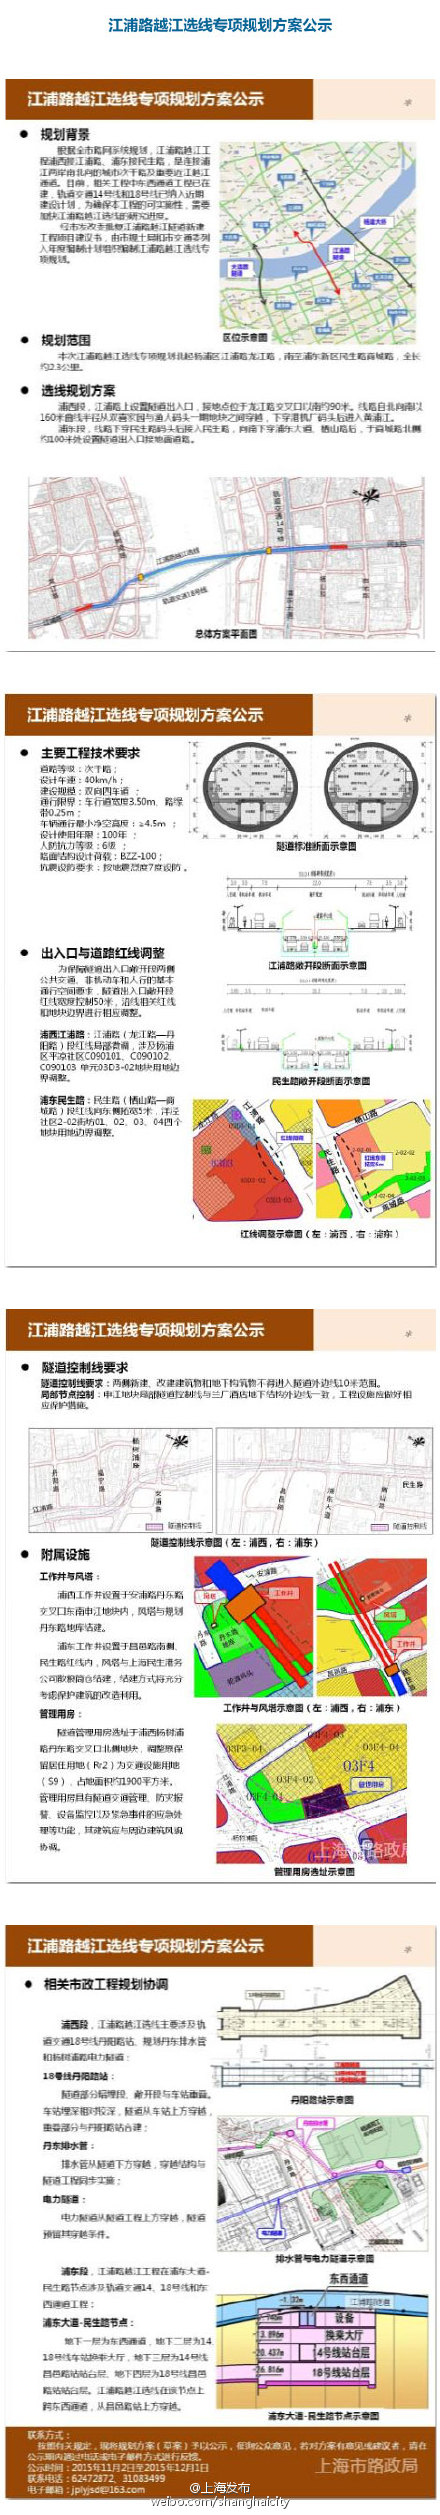 江浦路越江隧道规划方案公示拟规划为双向4车道